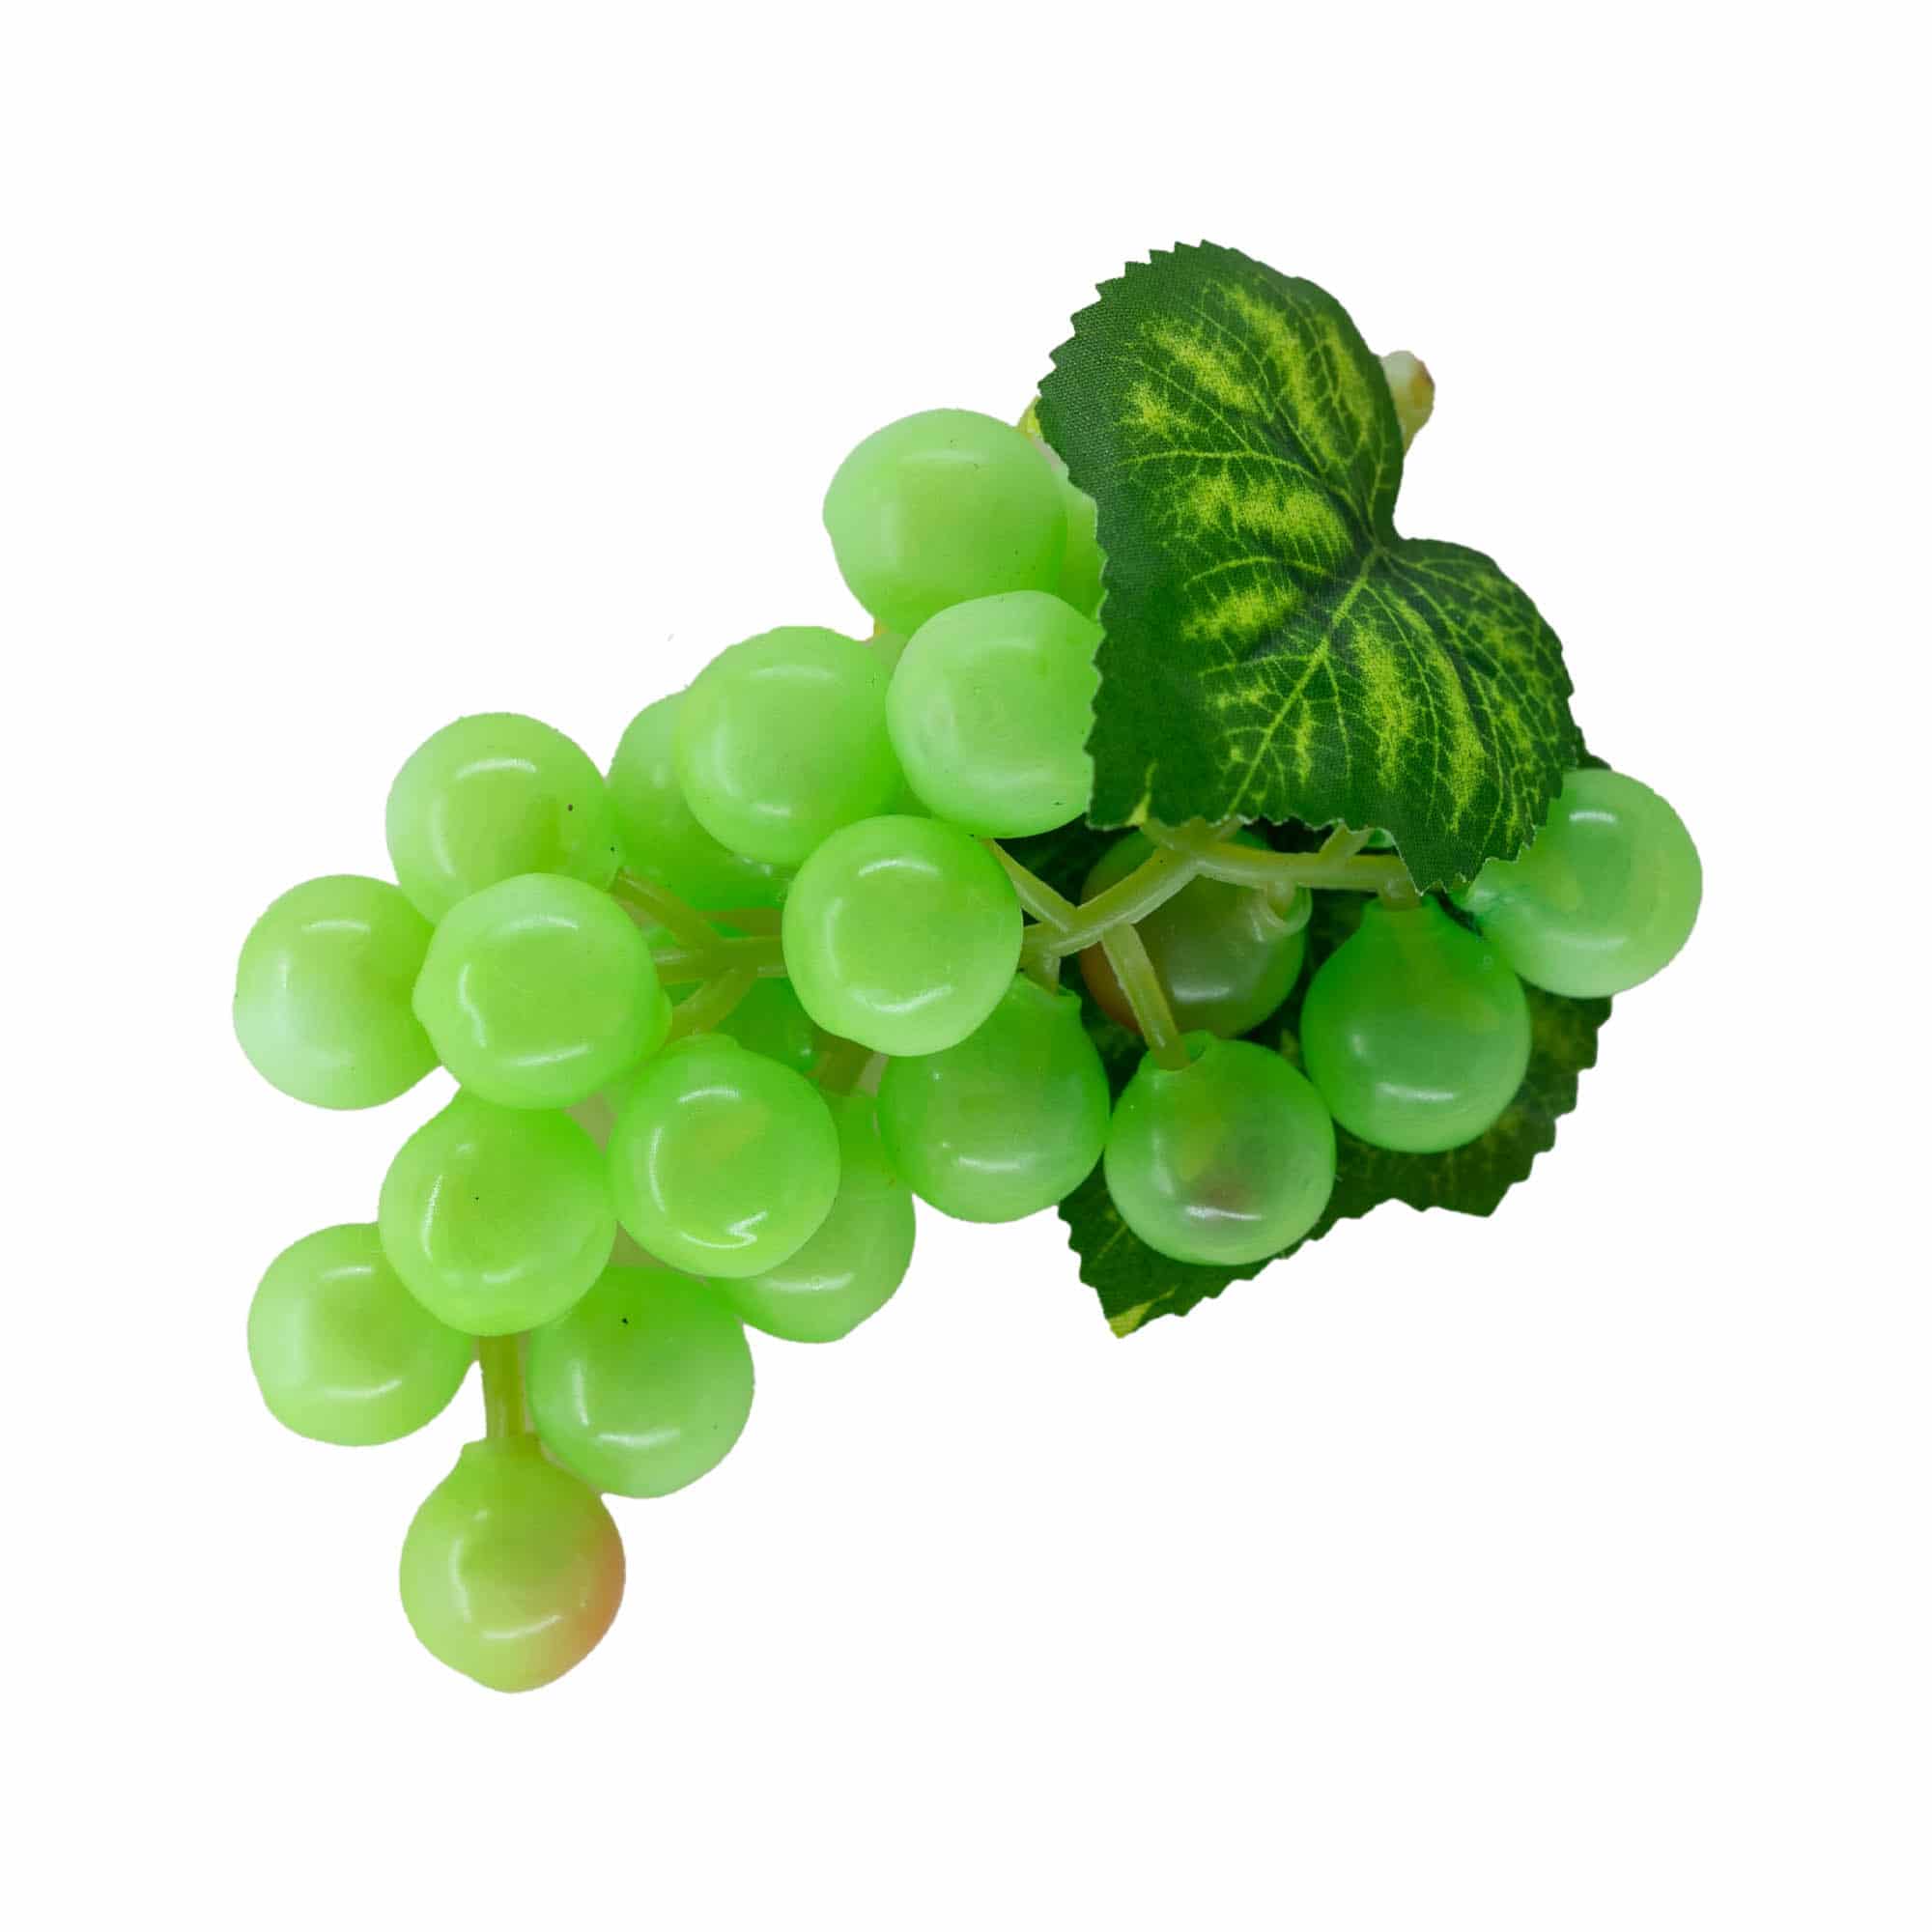 Winogrona z tworzywa sztucznego, kolor zielony